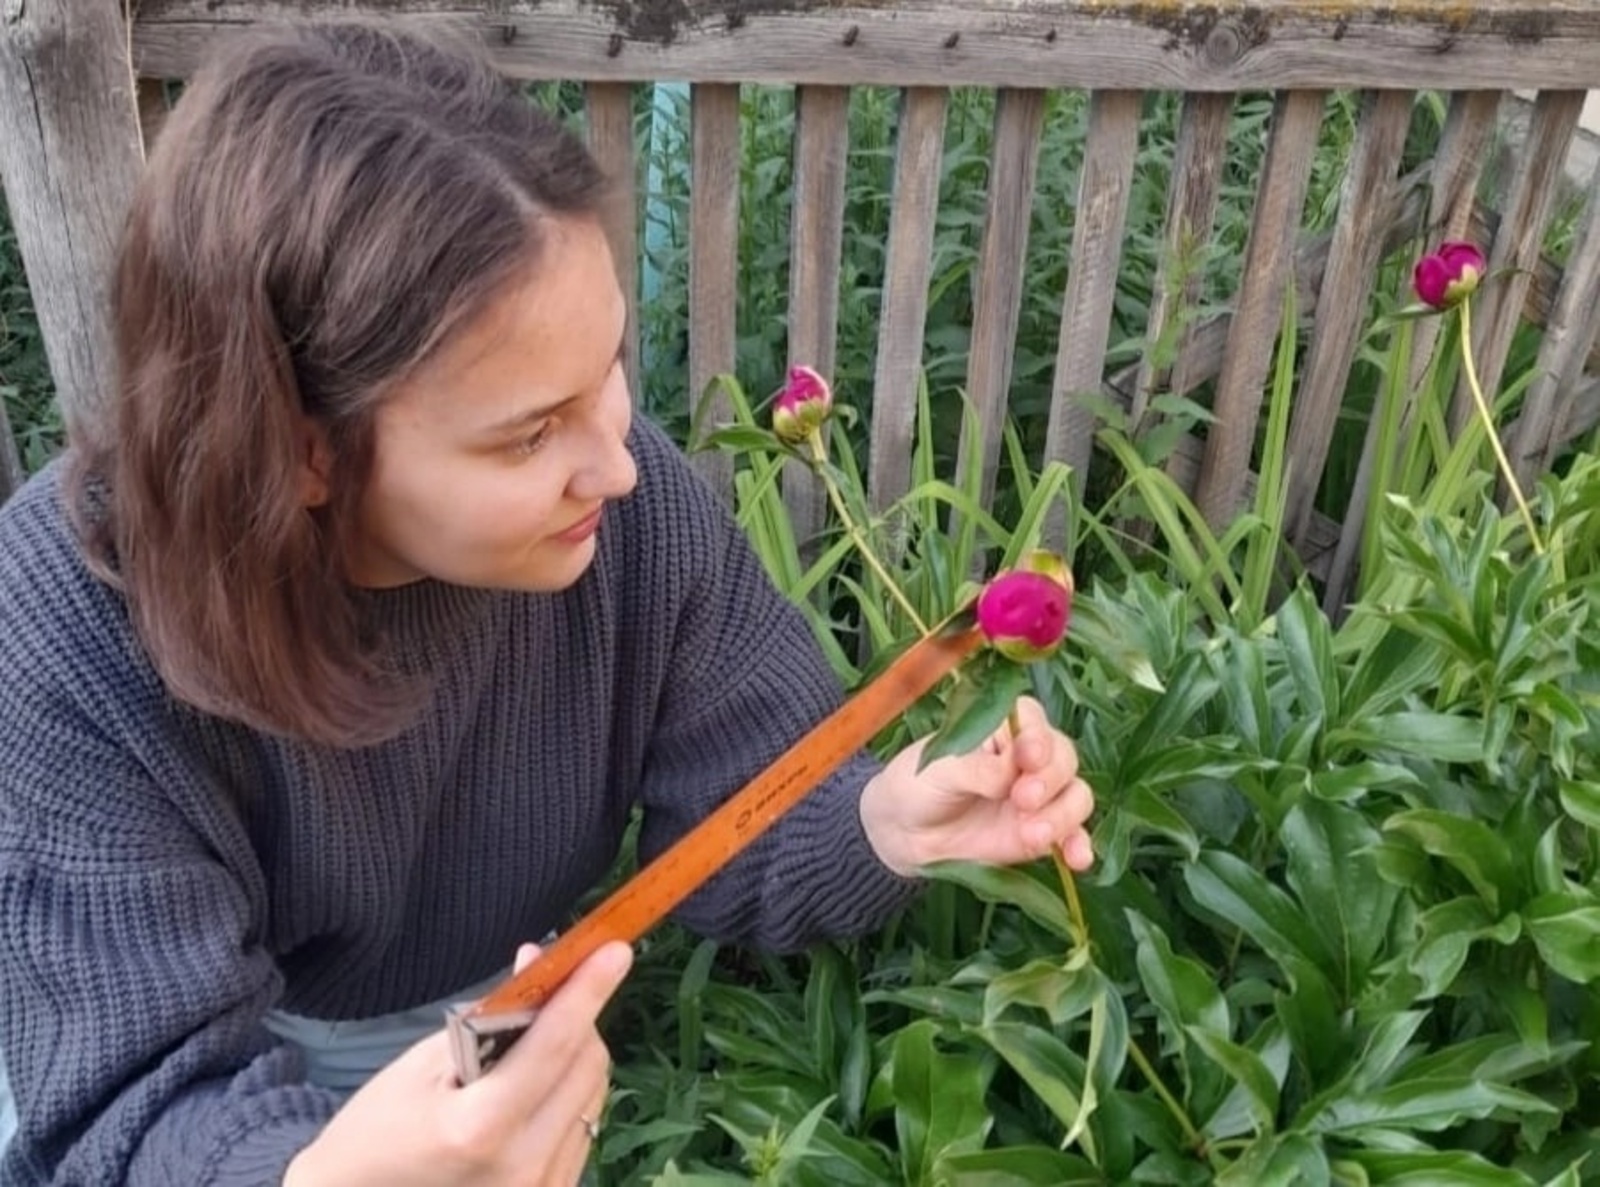 Юная исследовательница Софья Кожухарь, ученица школы № 2 села Акъяр, стала победителем регионального этапа Всероссийского конкурса